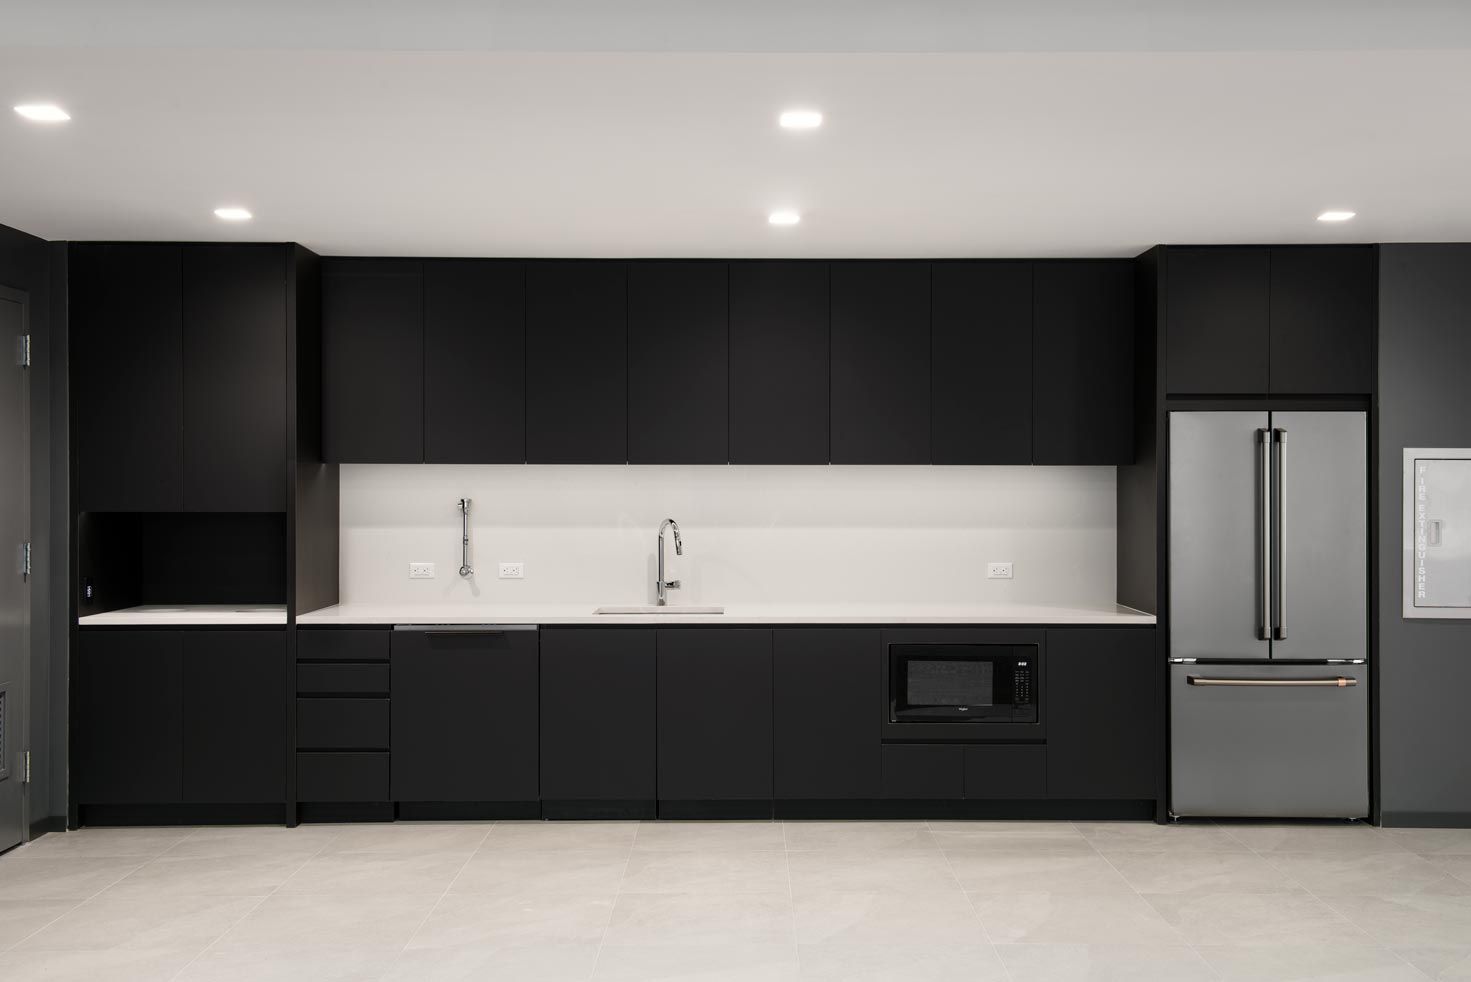 Luxury black kitchen in hotel suite 410 Park Avenue